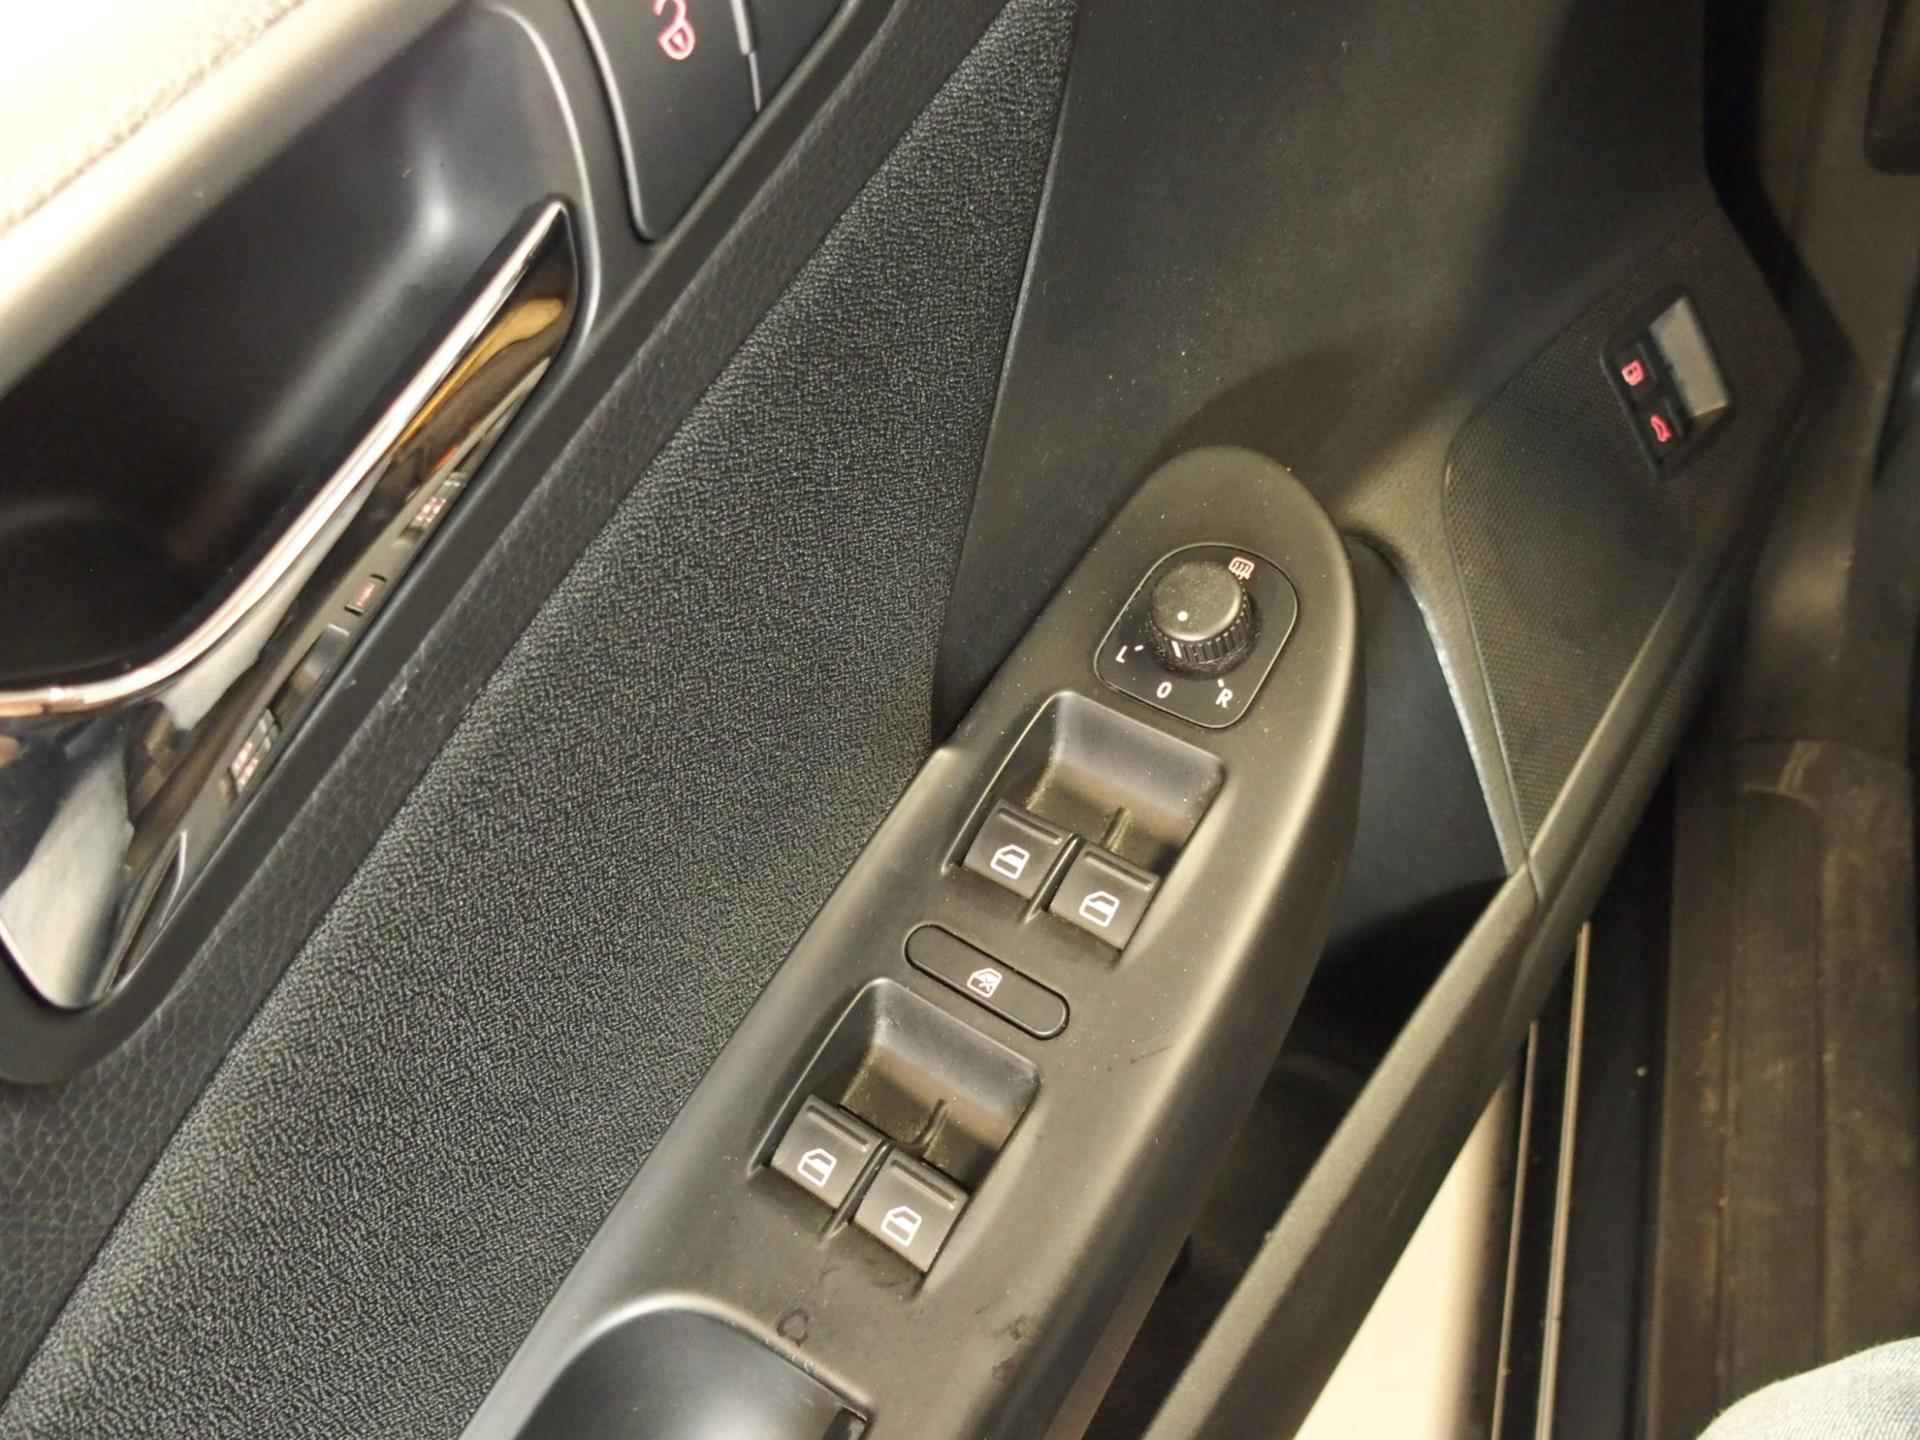 Volkswagen Passat 1.8 TFSI Automaat Comfort-line Trekhaak, automaat, cruise controle, complete OH historie - 23/35